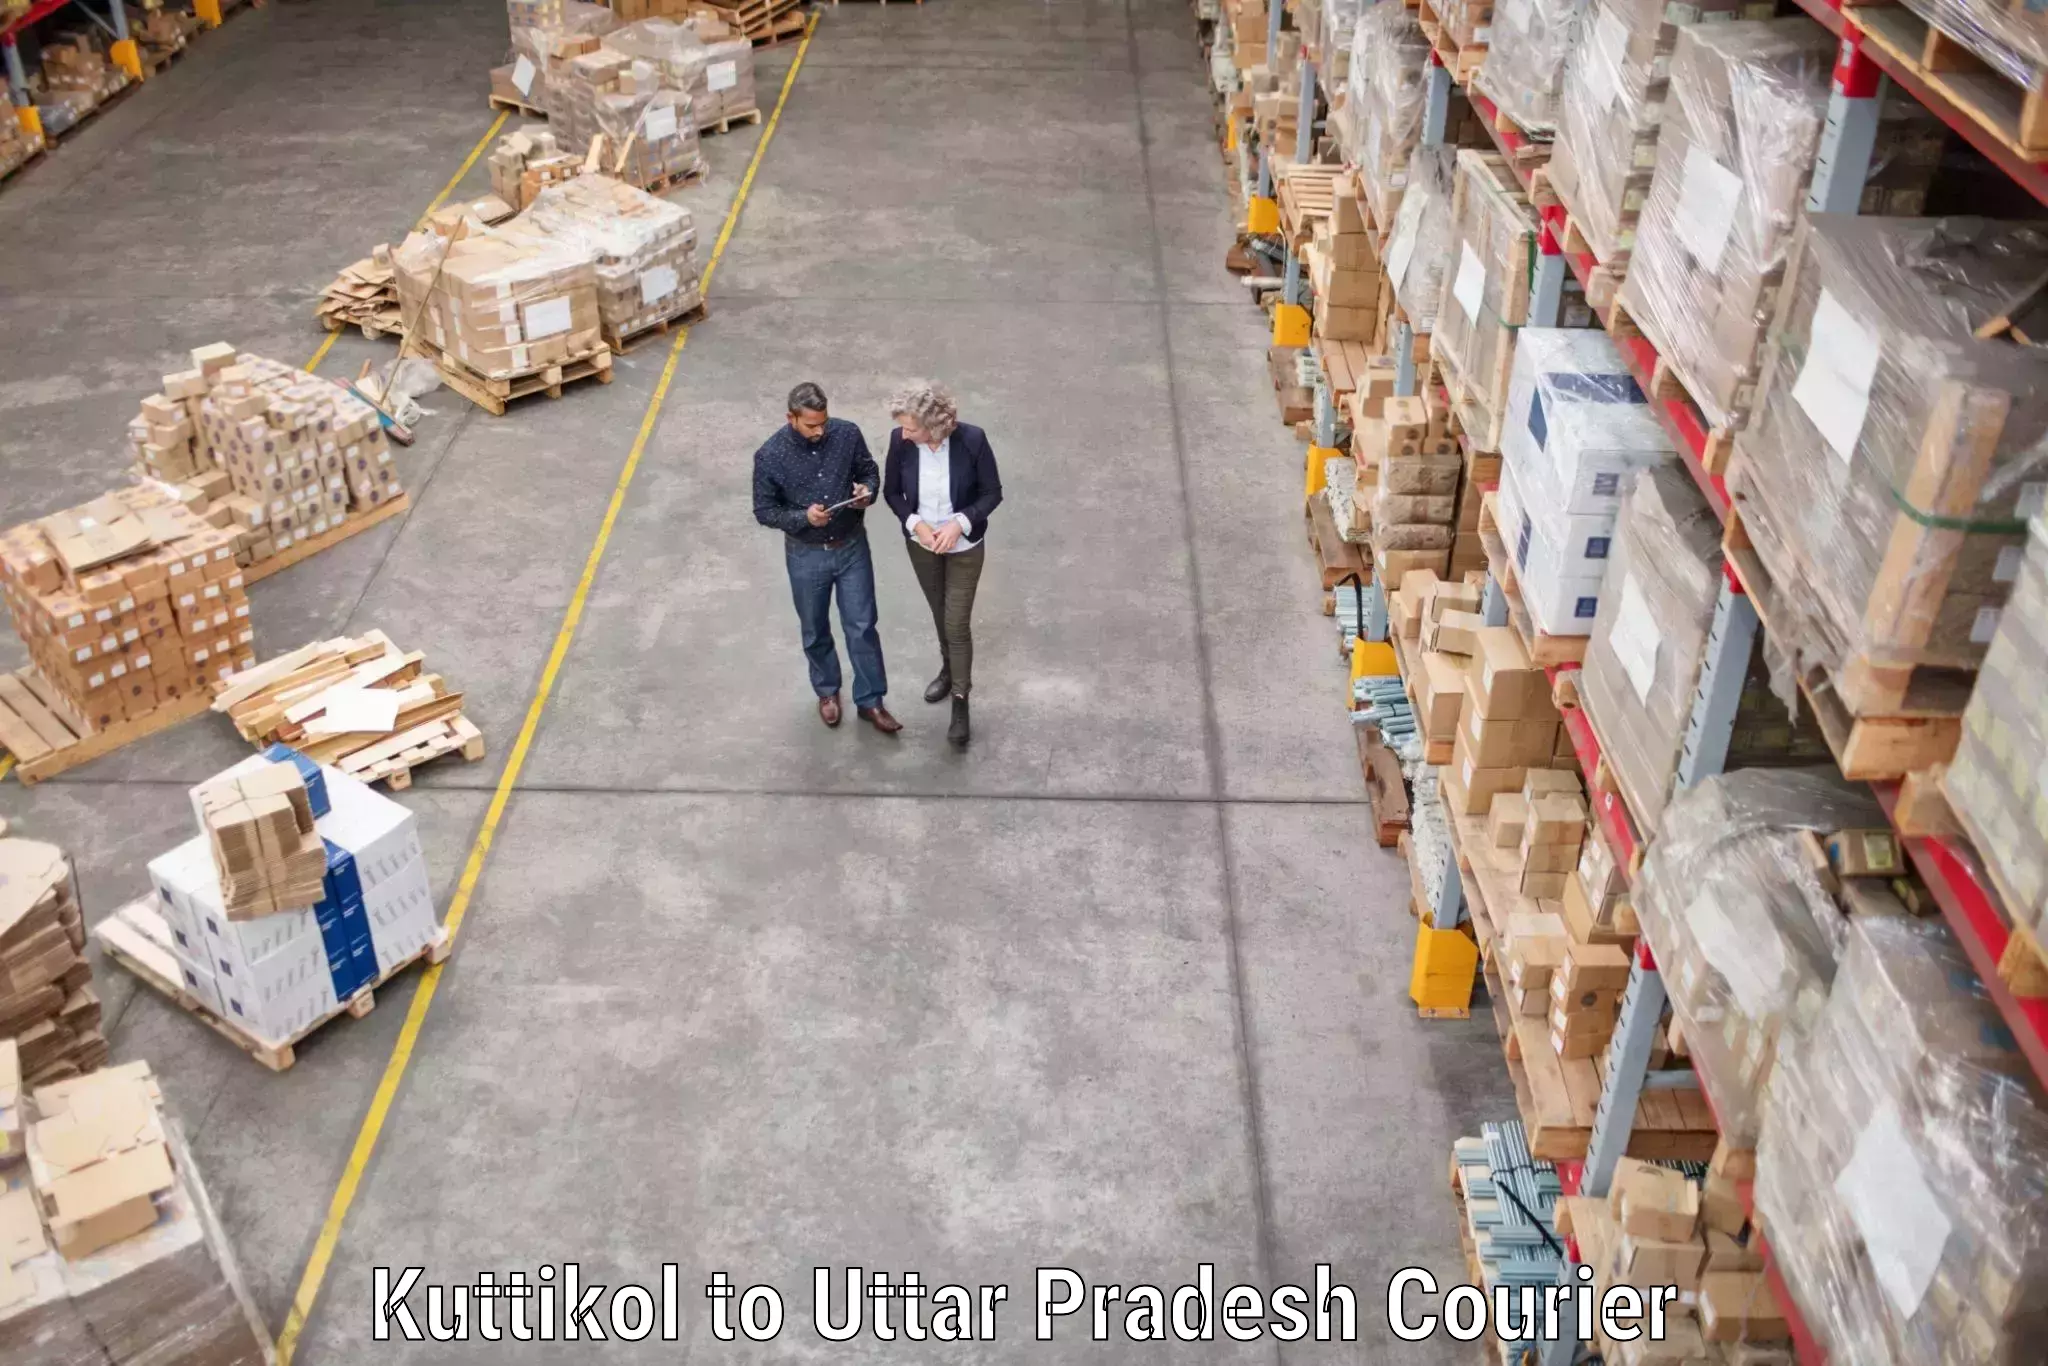 Efficient moving company Kuttikol to Maudaha